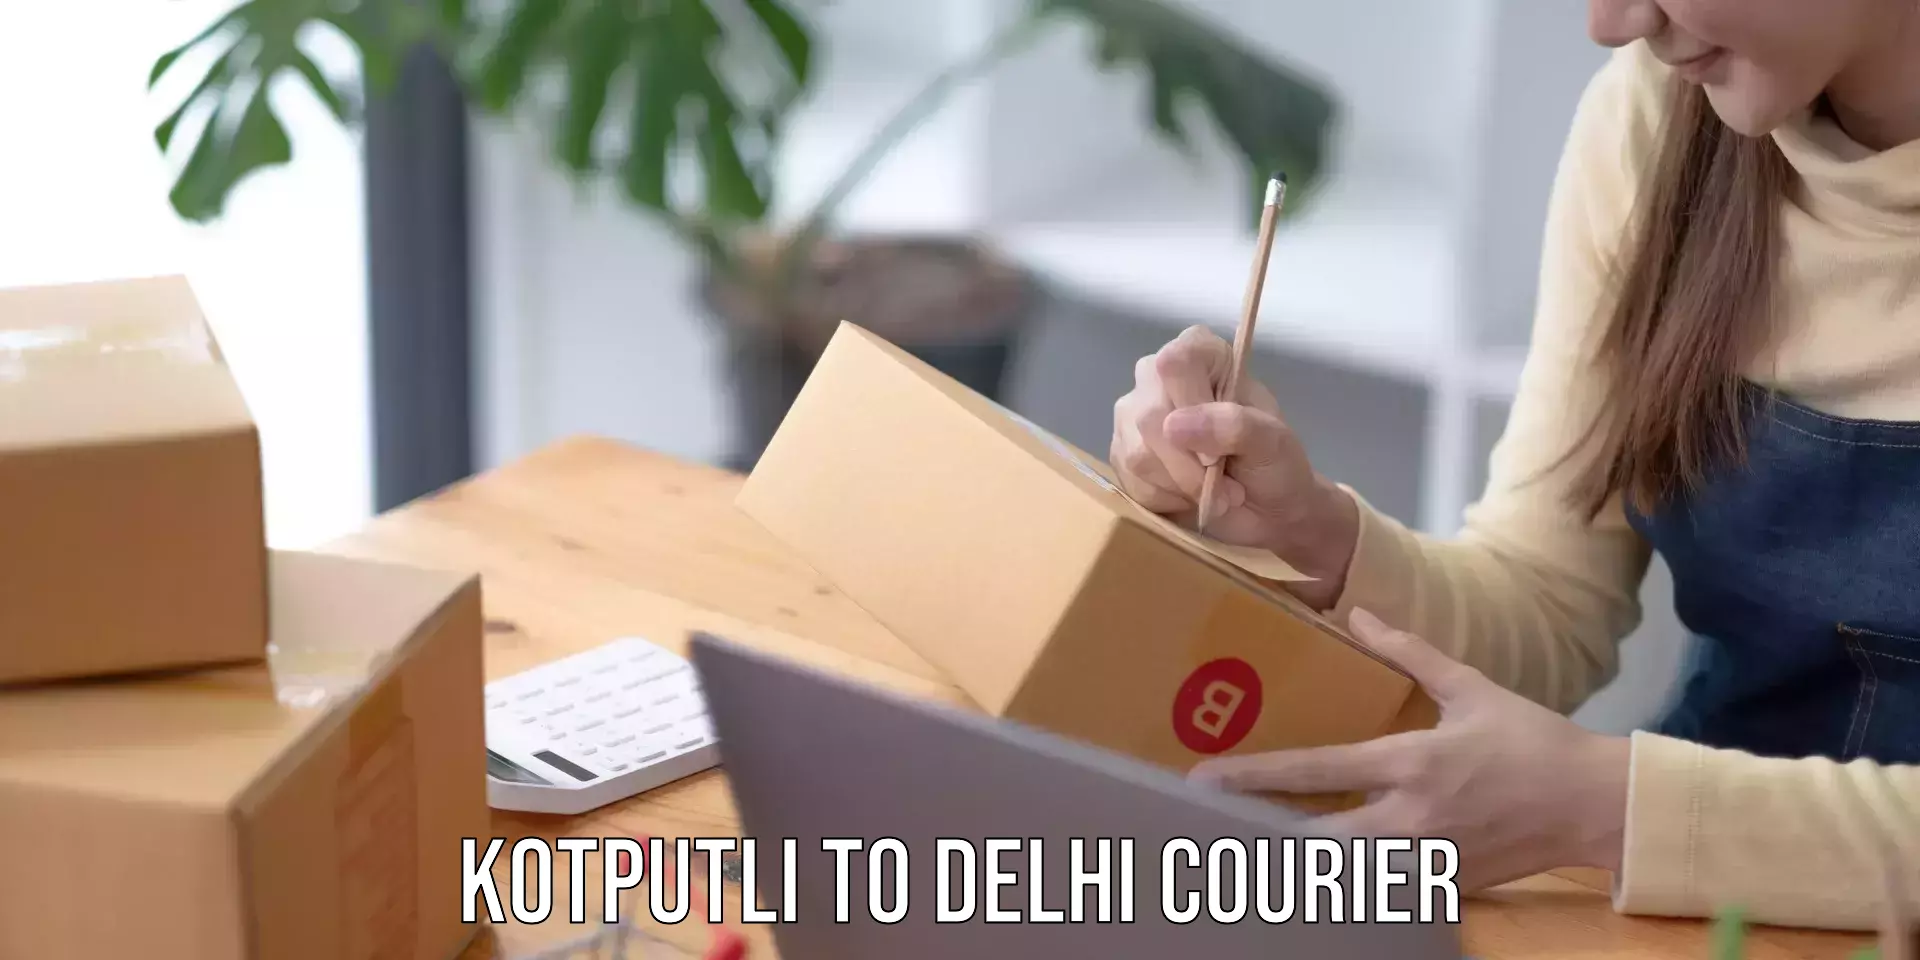 Budget-friendly shipping Kotputli to University of Delhi